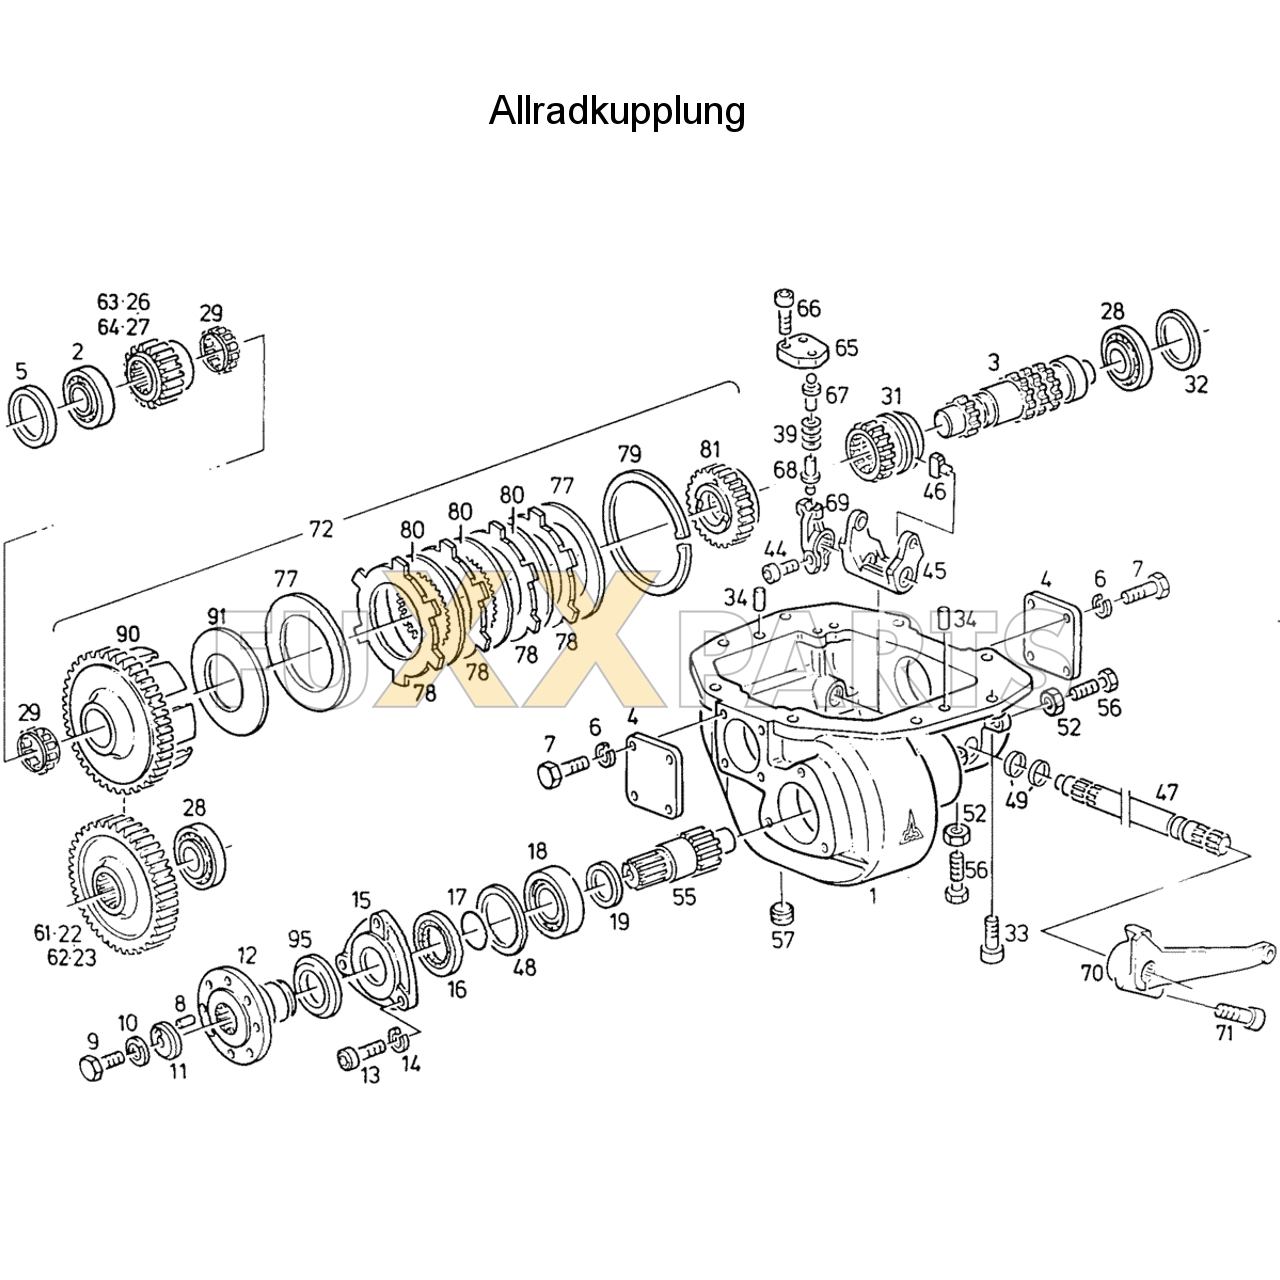 D 7207 C Allradkupplung